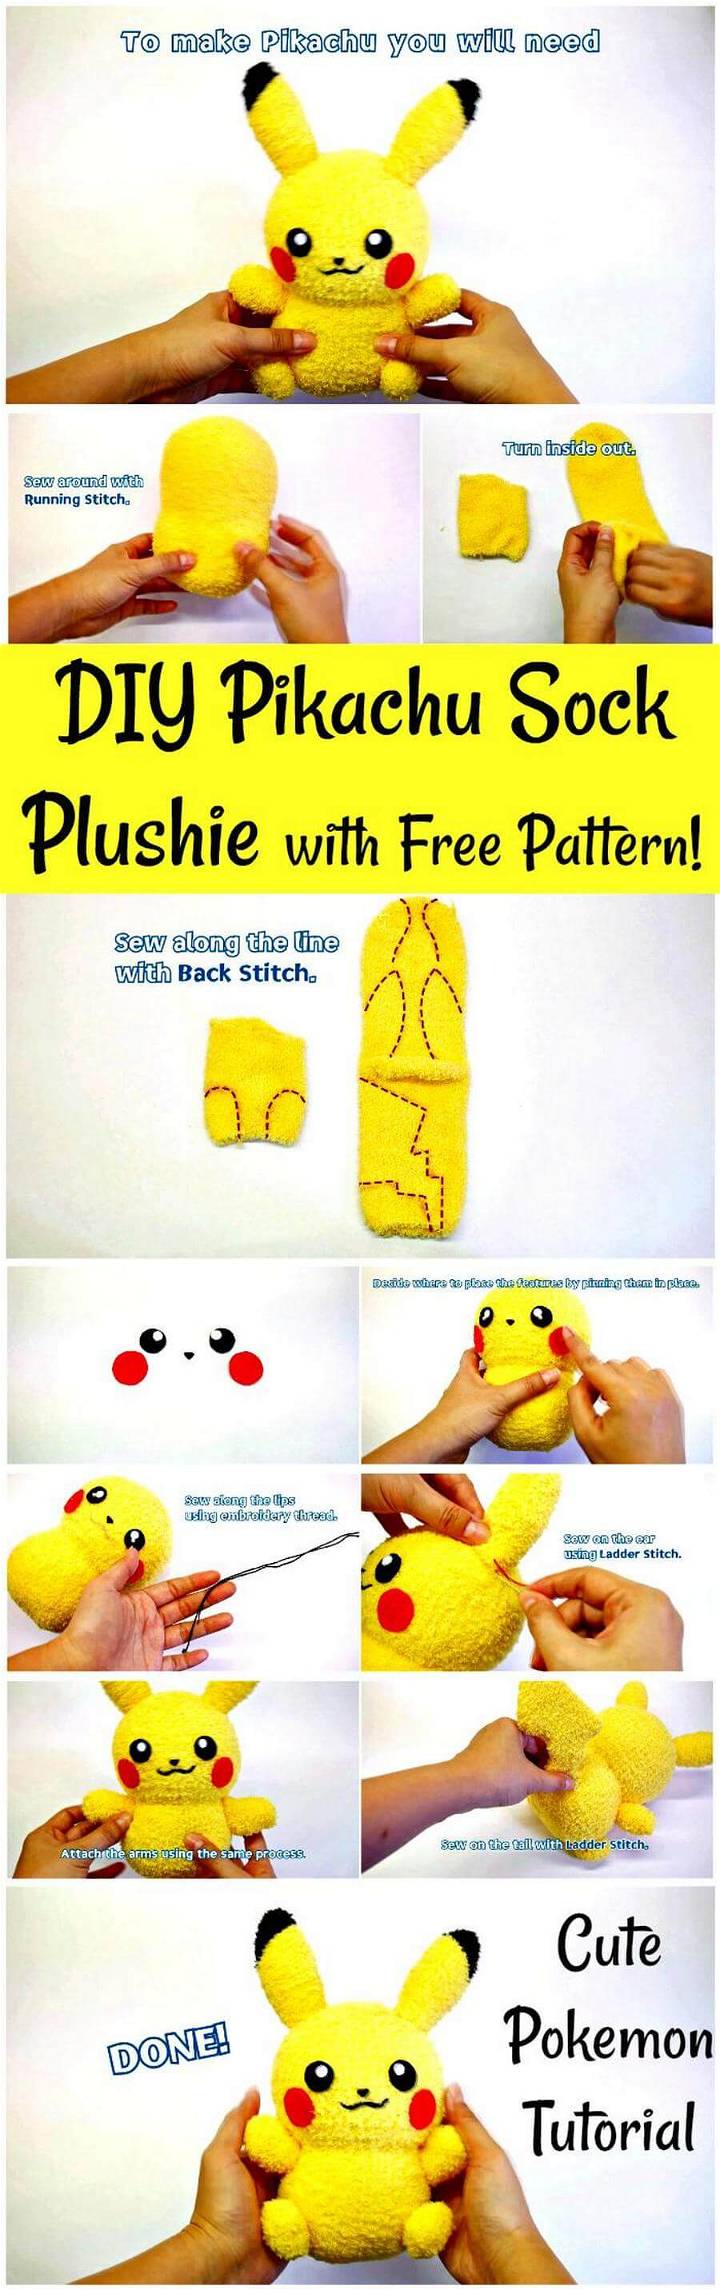 DIY Pikachu Sock Plushie with Free Pattern